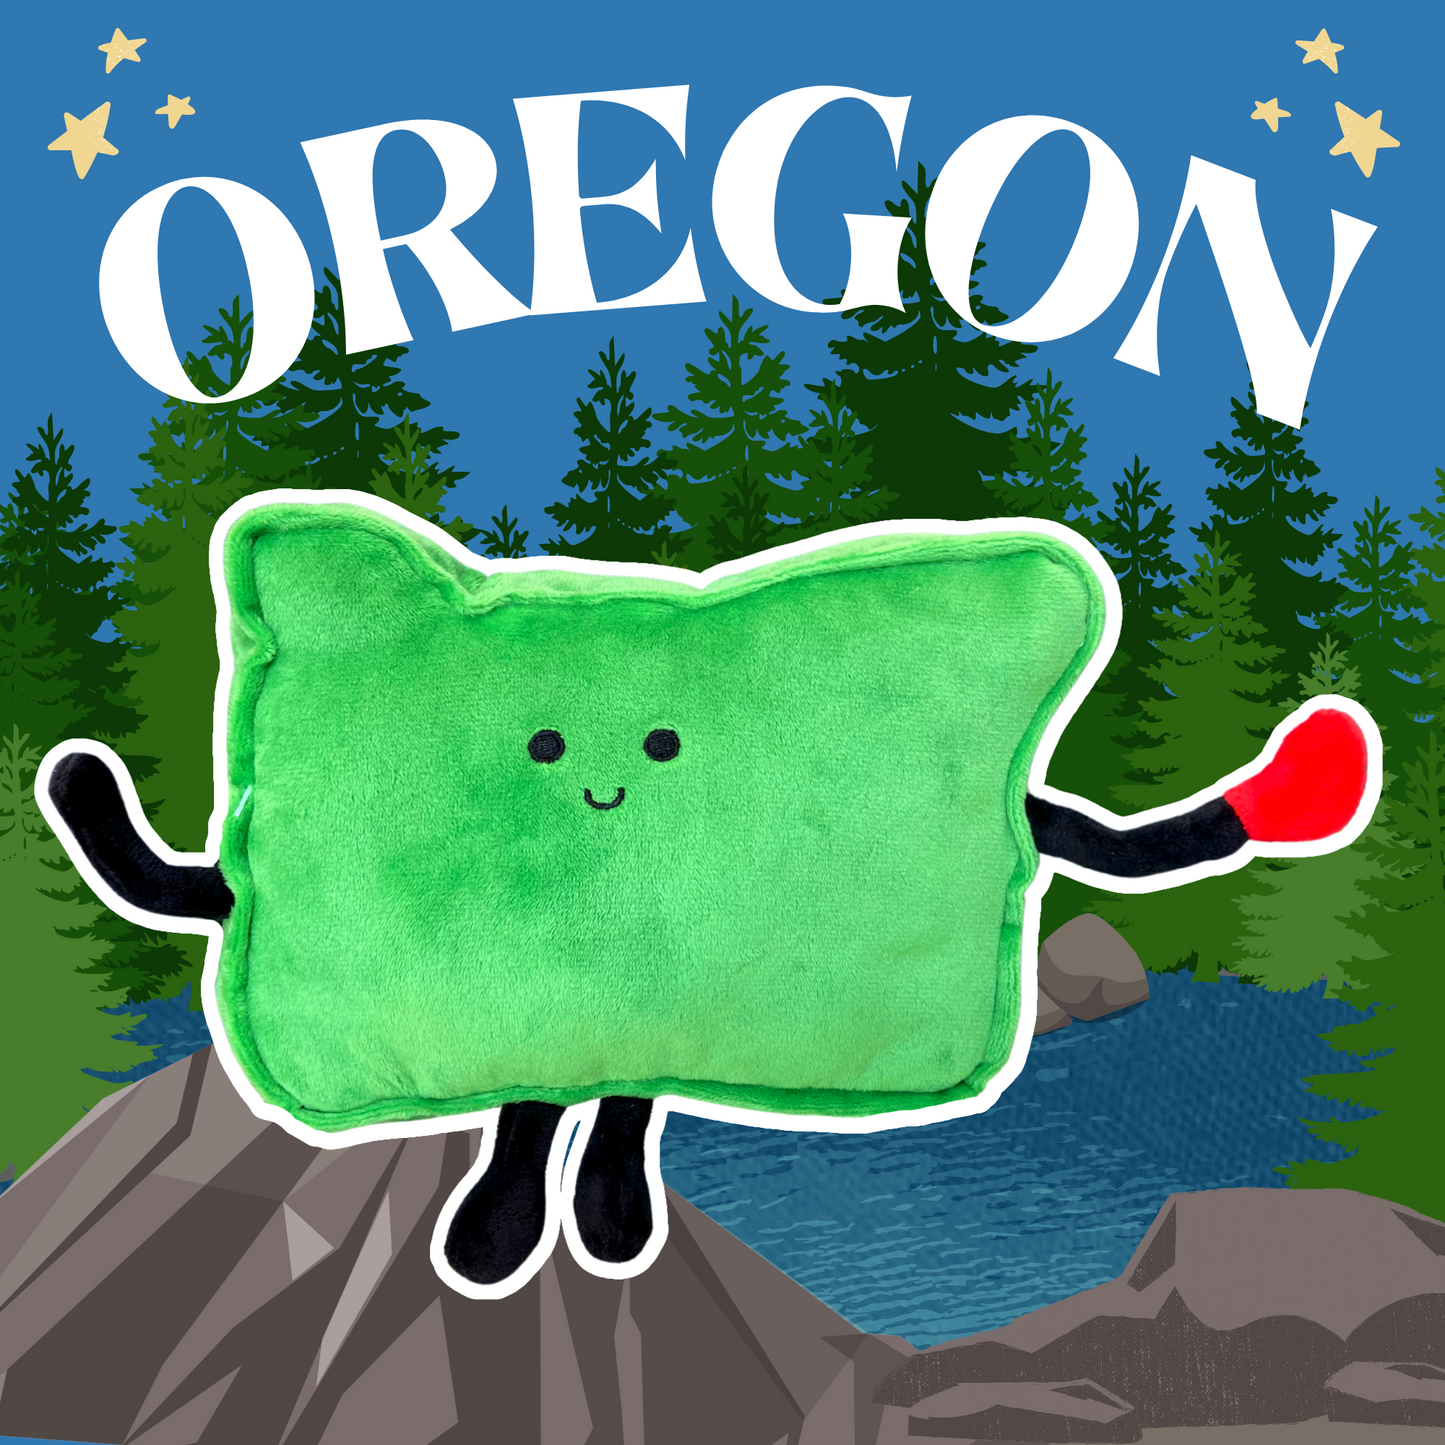 Oregon State Stuffed Plush